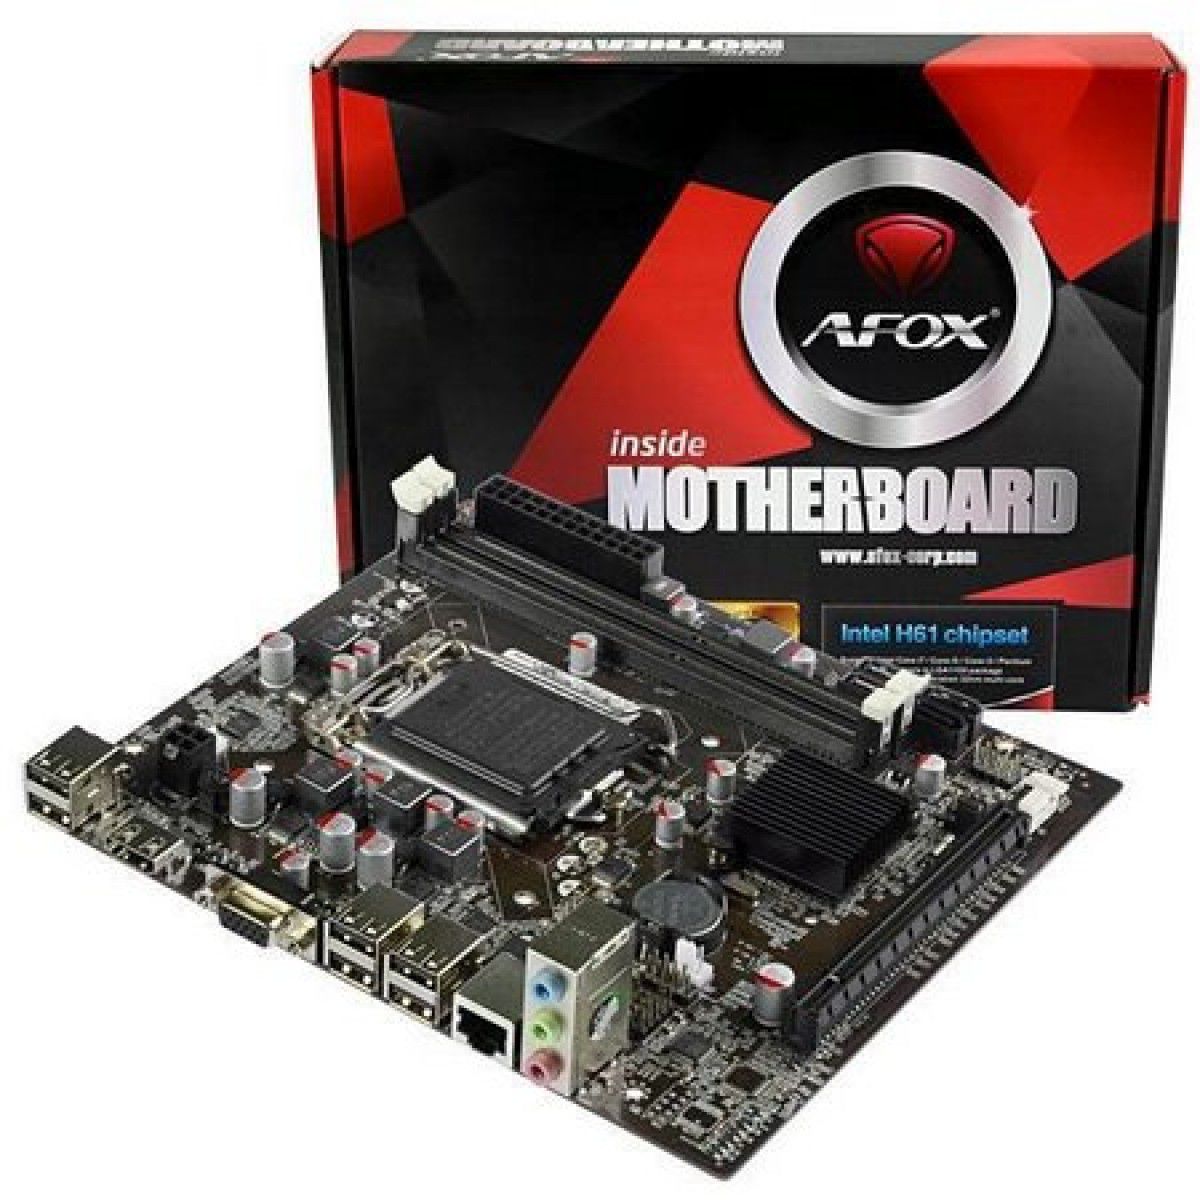 Placa Mãe AFOX IH61-MA5 Chipset H61, Intel LGA 1155, mATX, DDR3